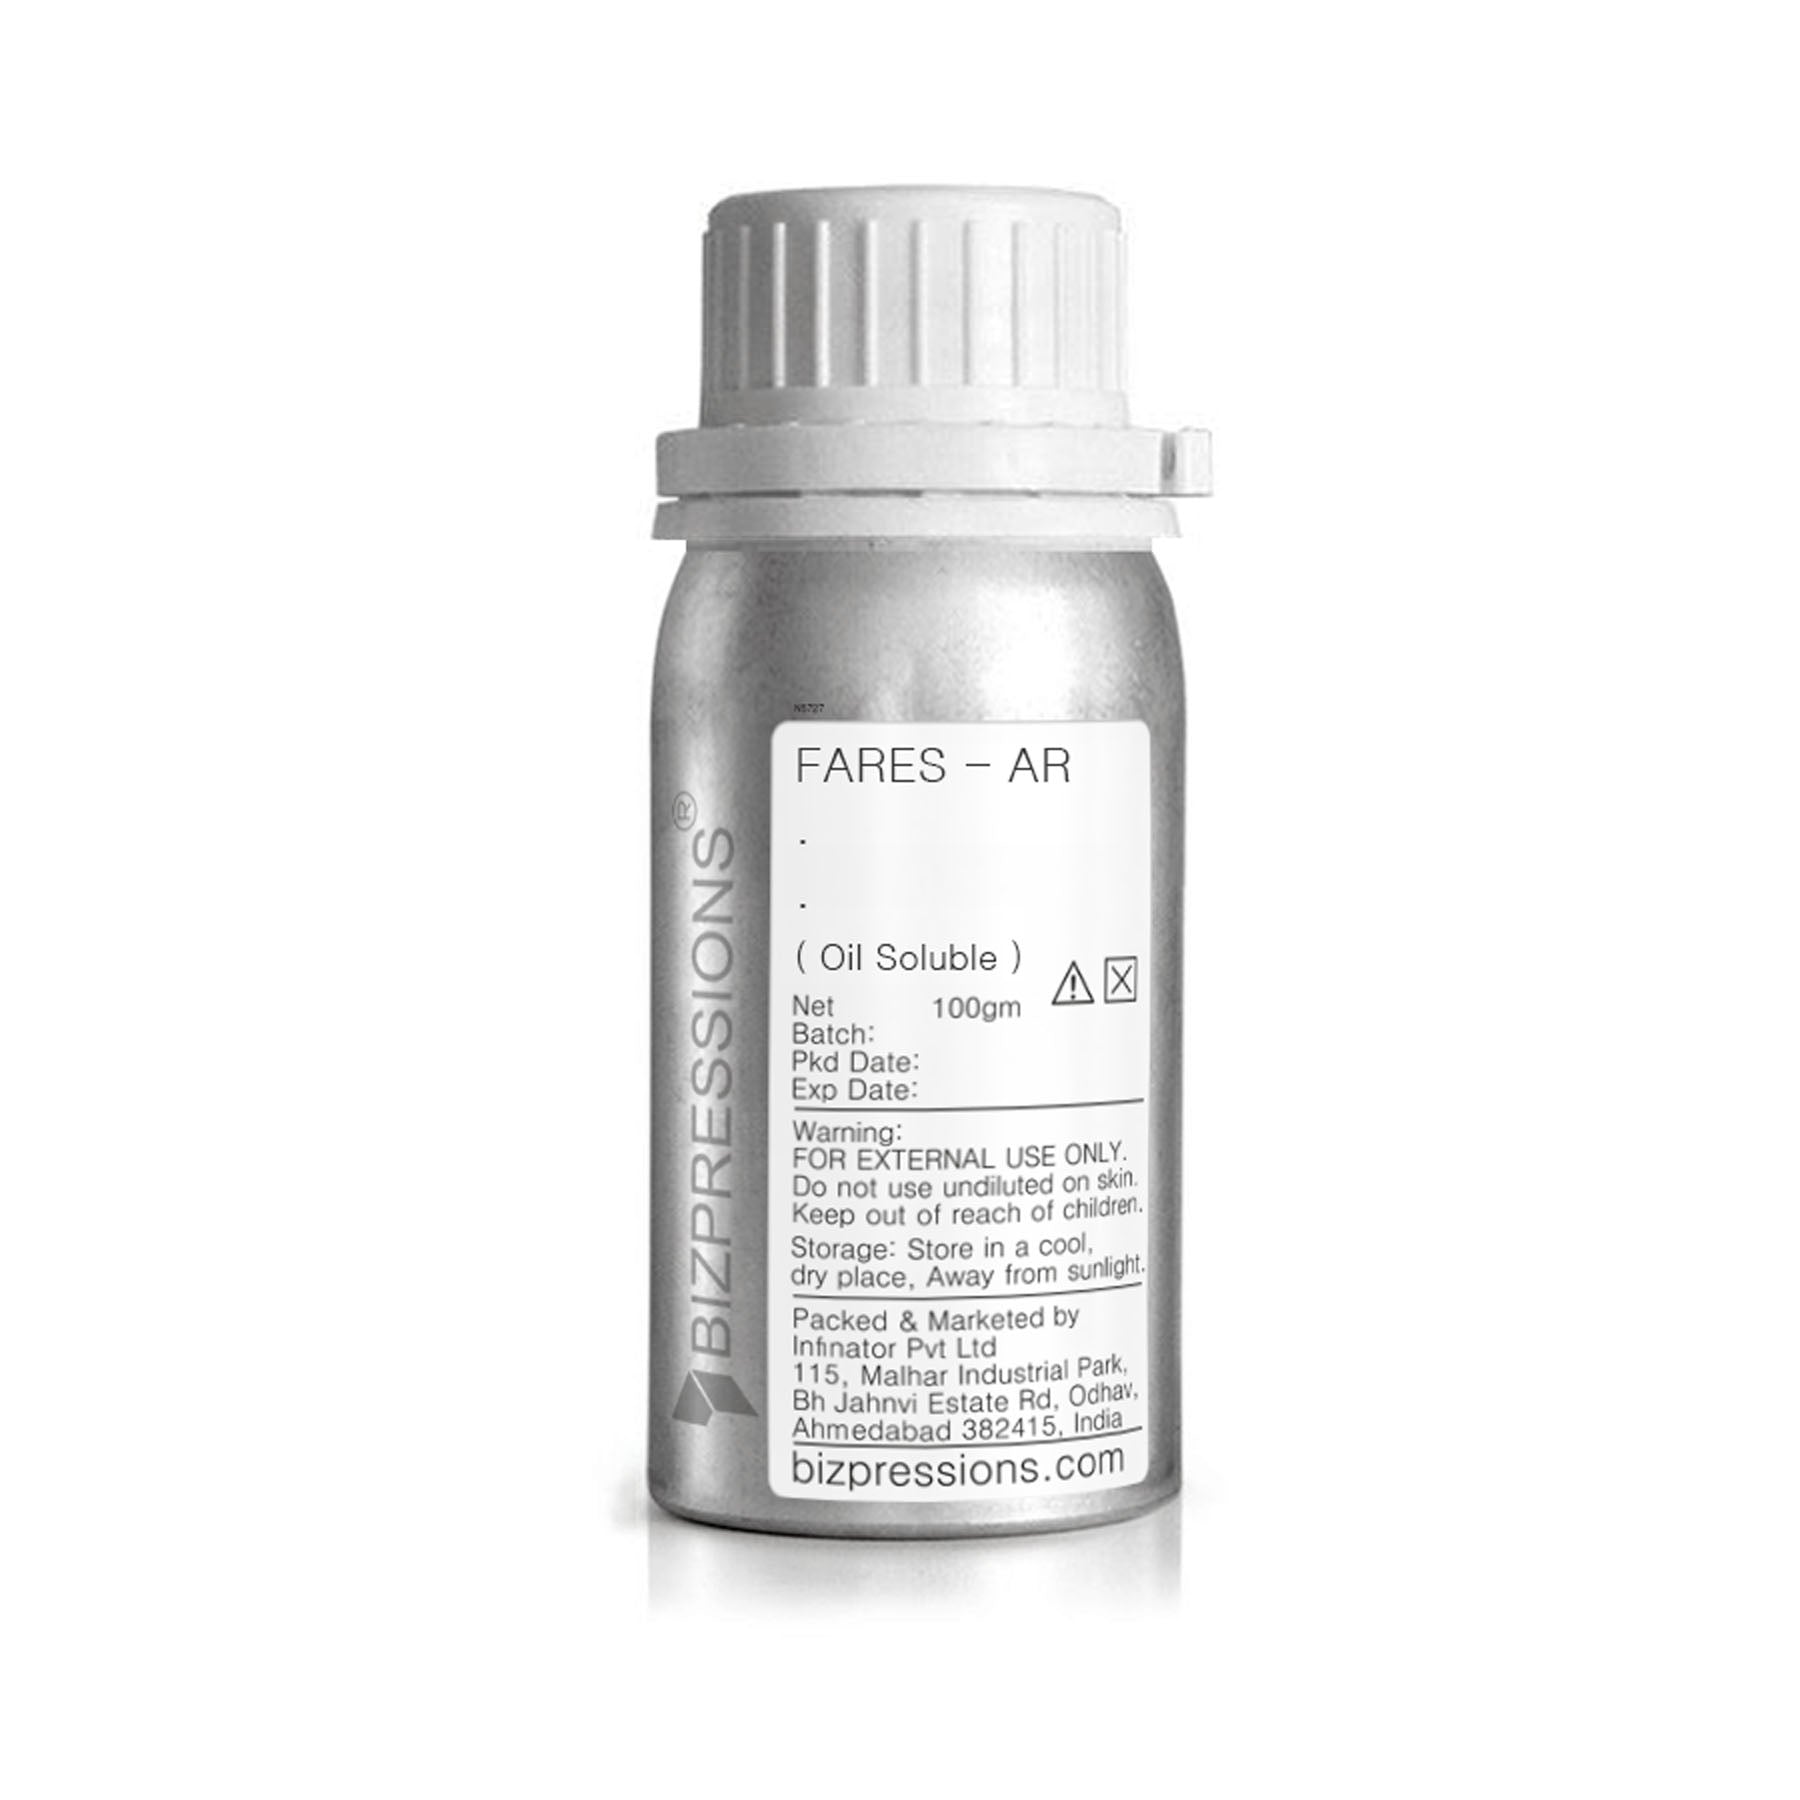 FARES - AR - Fragrance ( Oil Soluble ) - 100 gm